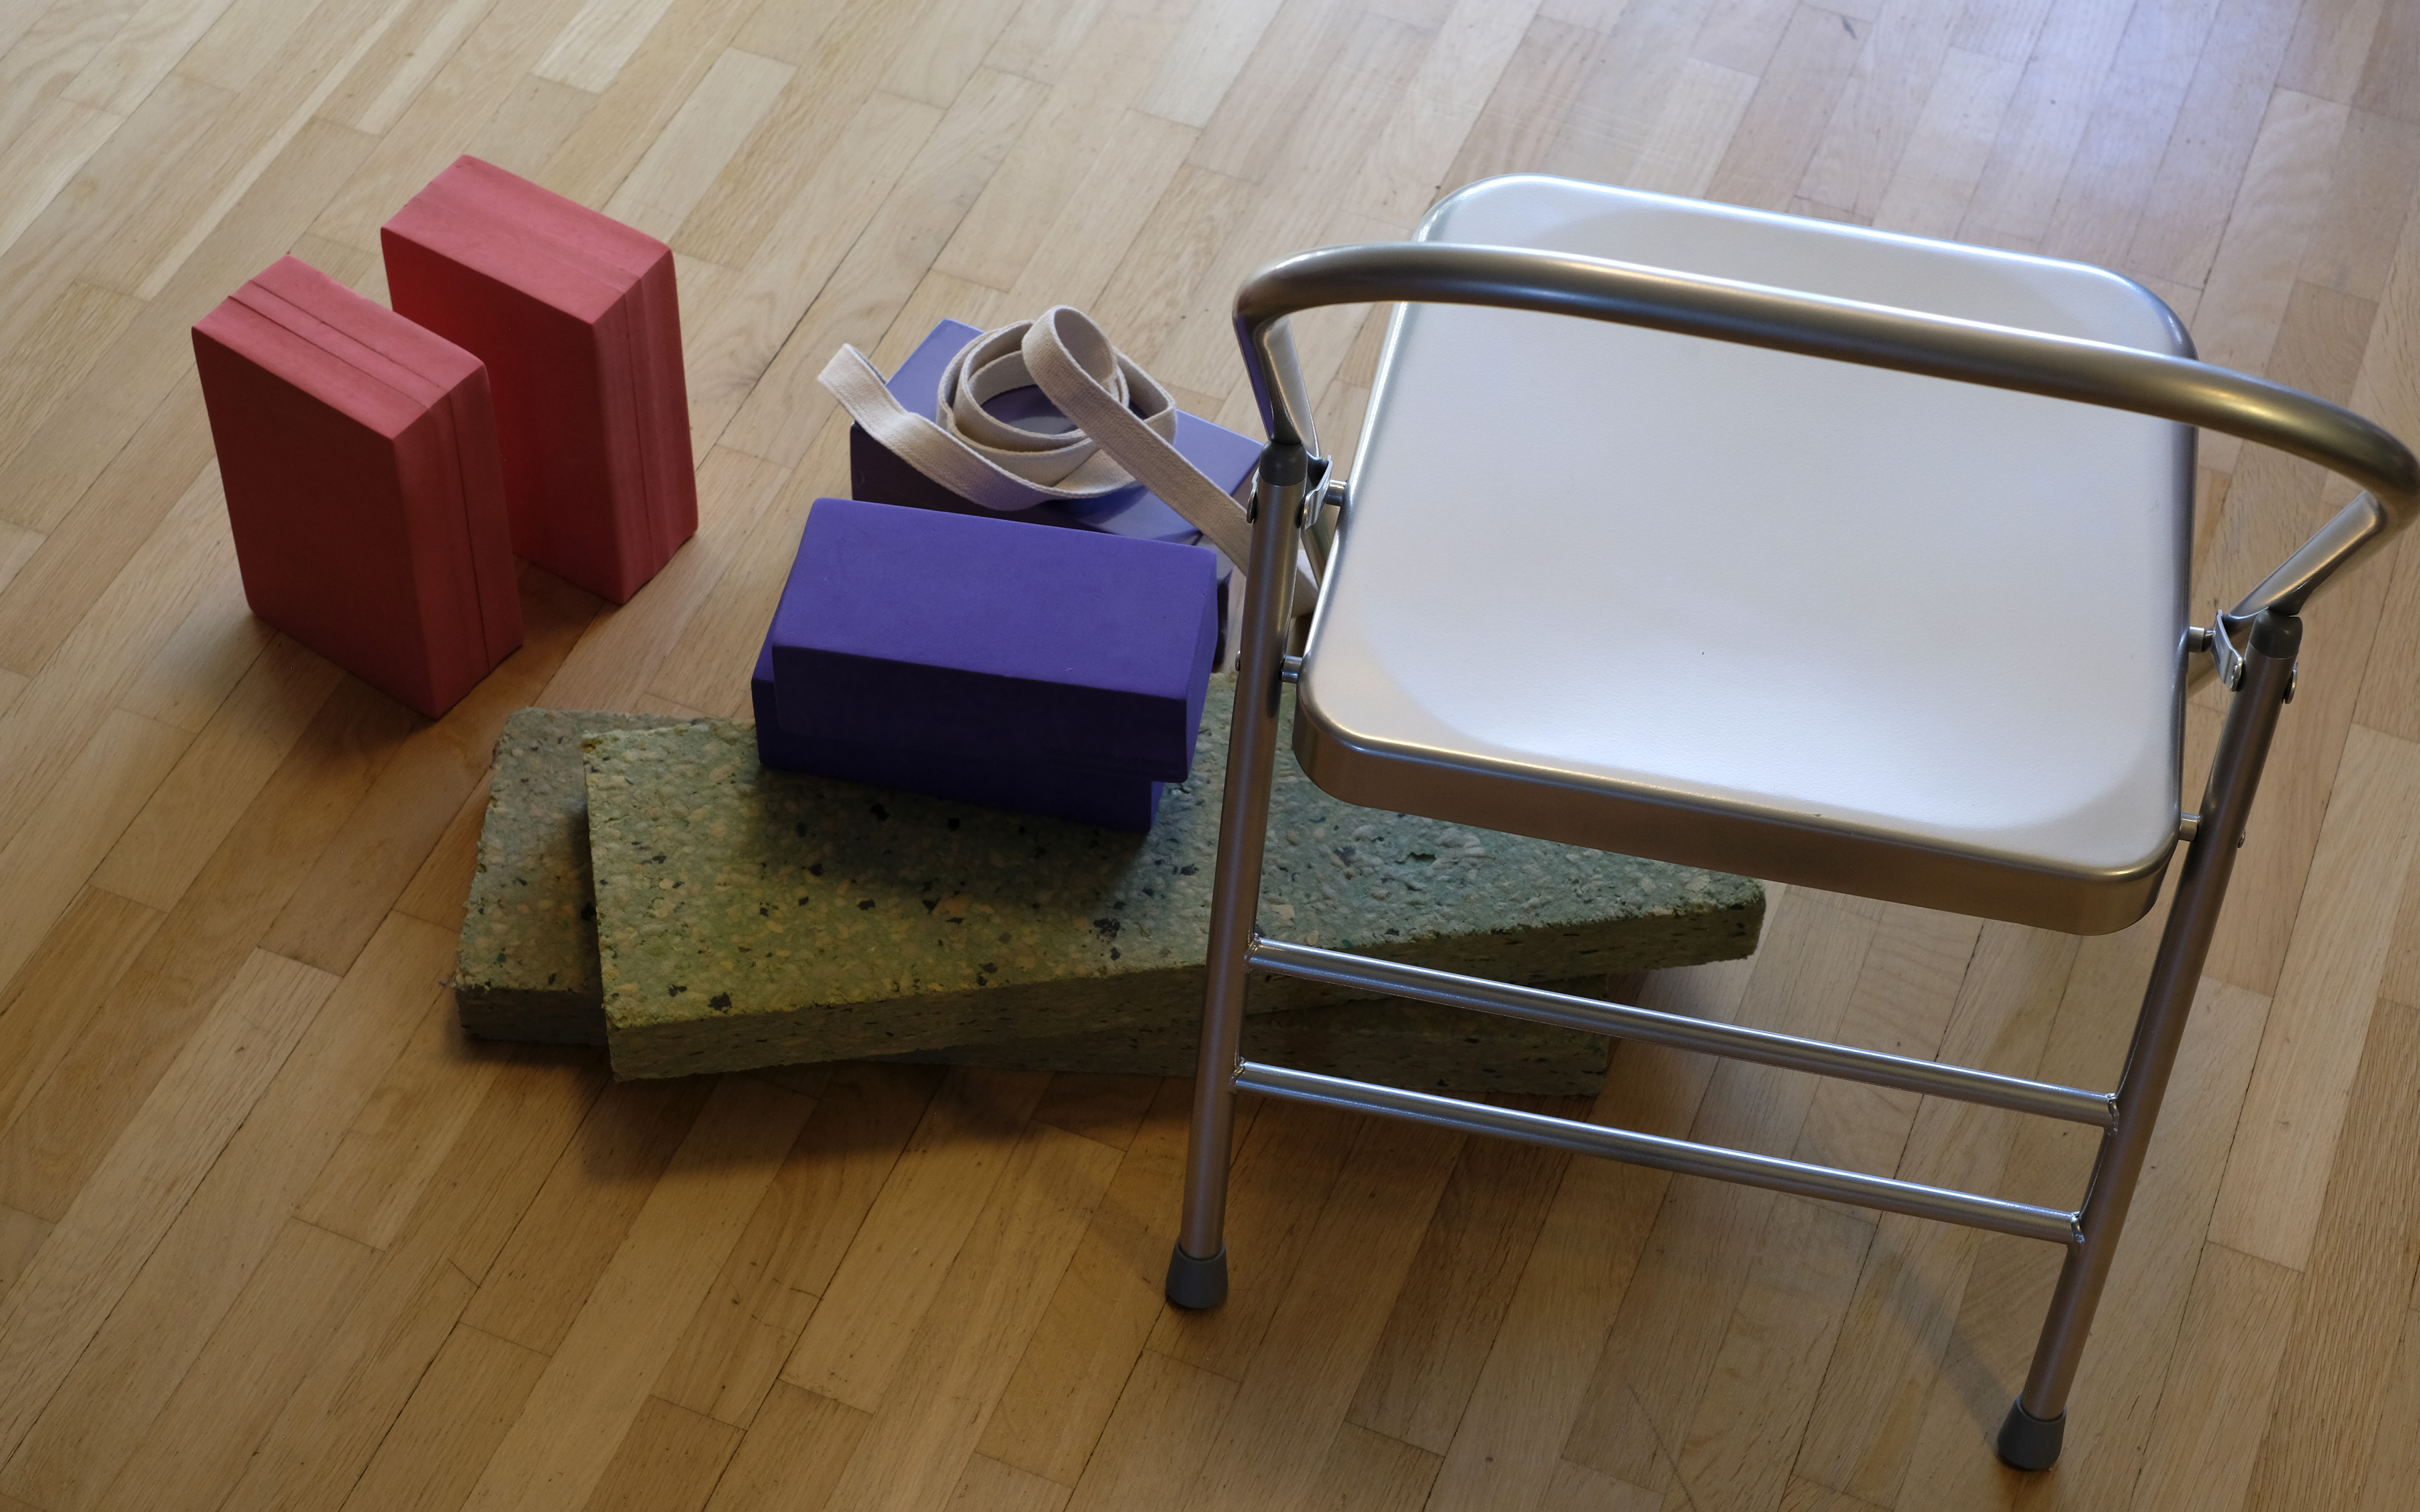 Yogamaterial till salu: stolar, klossar, bälten